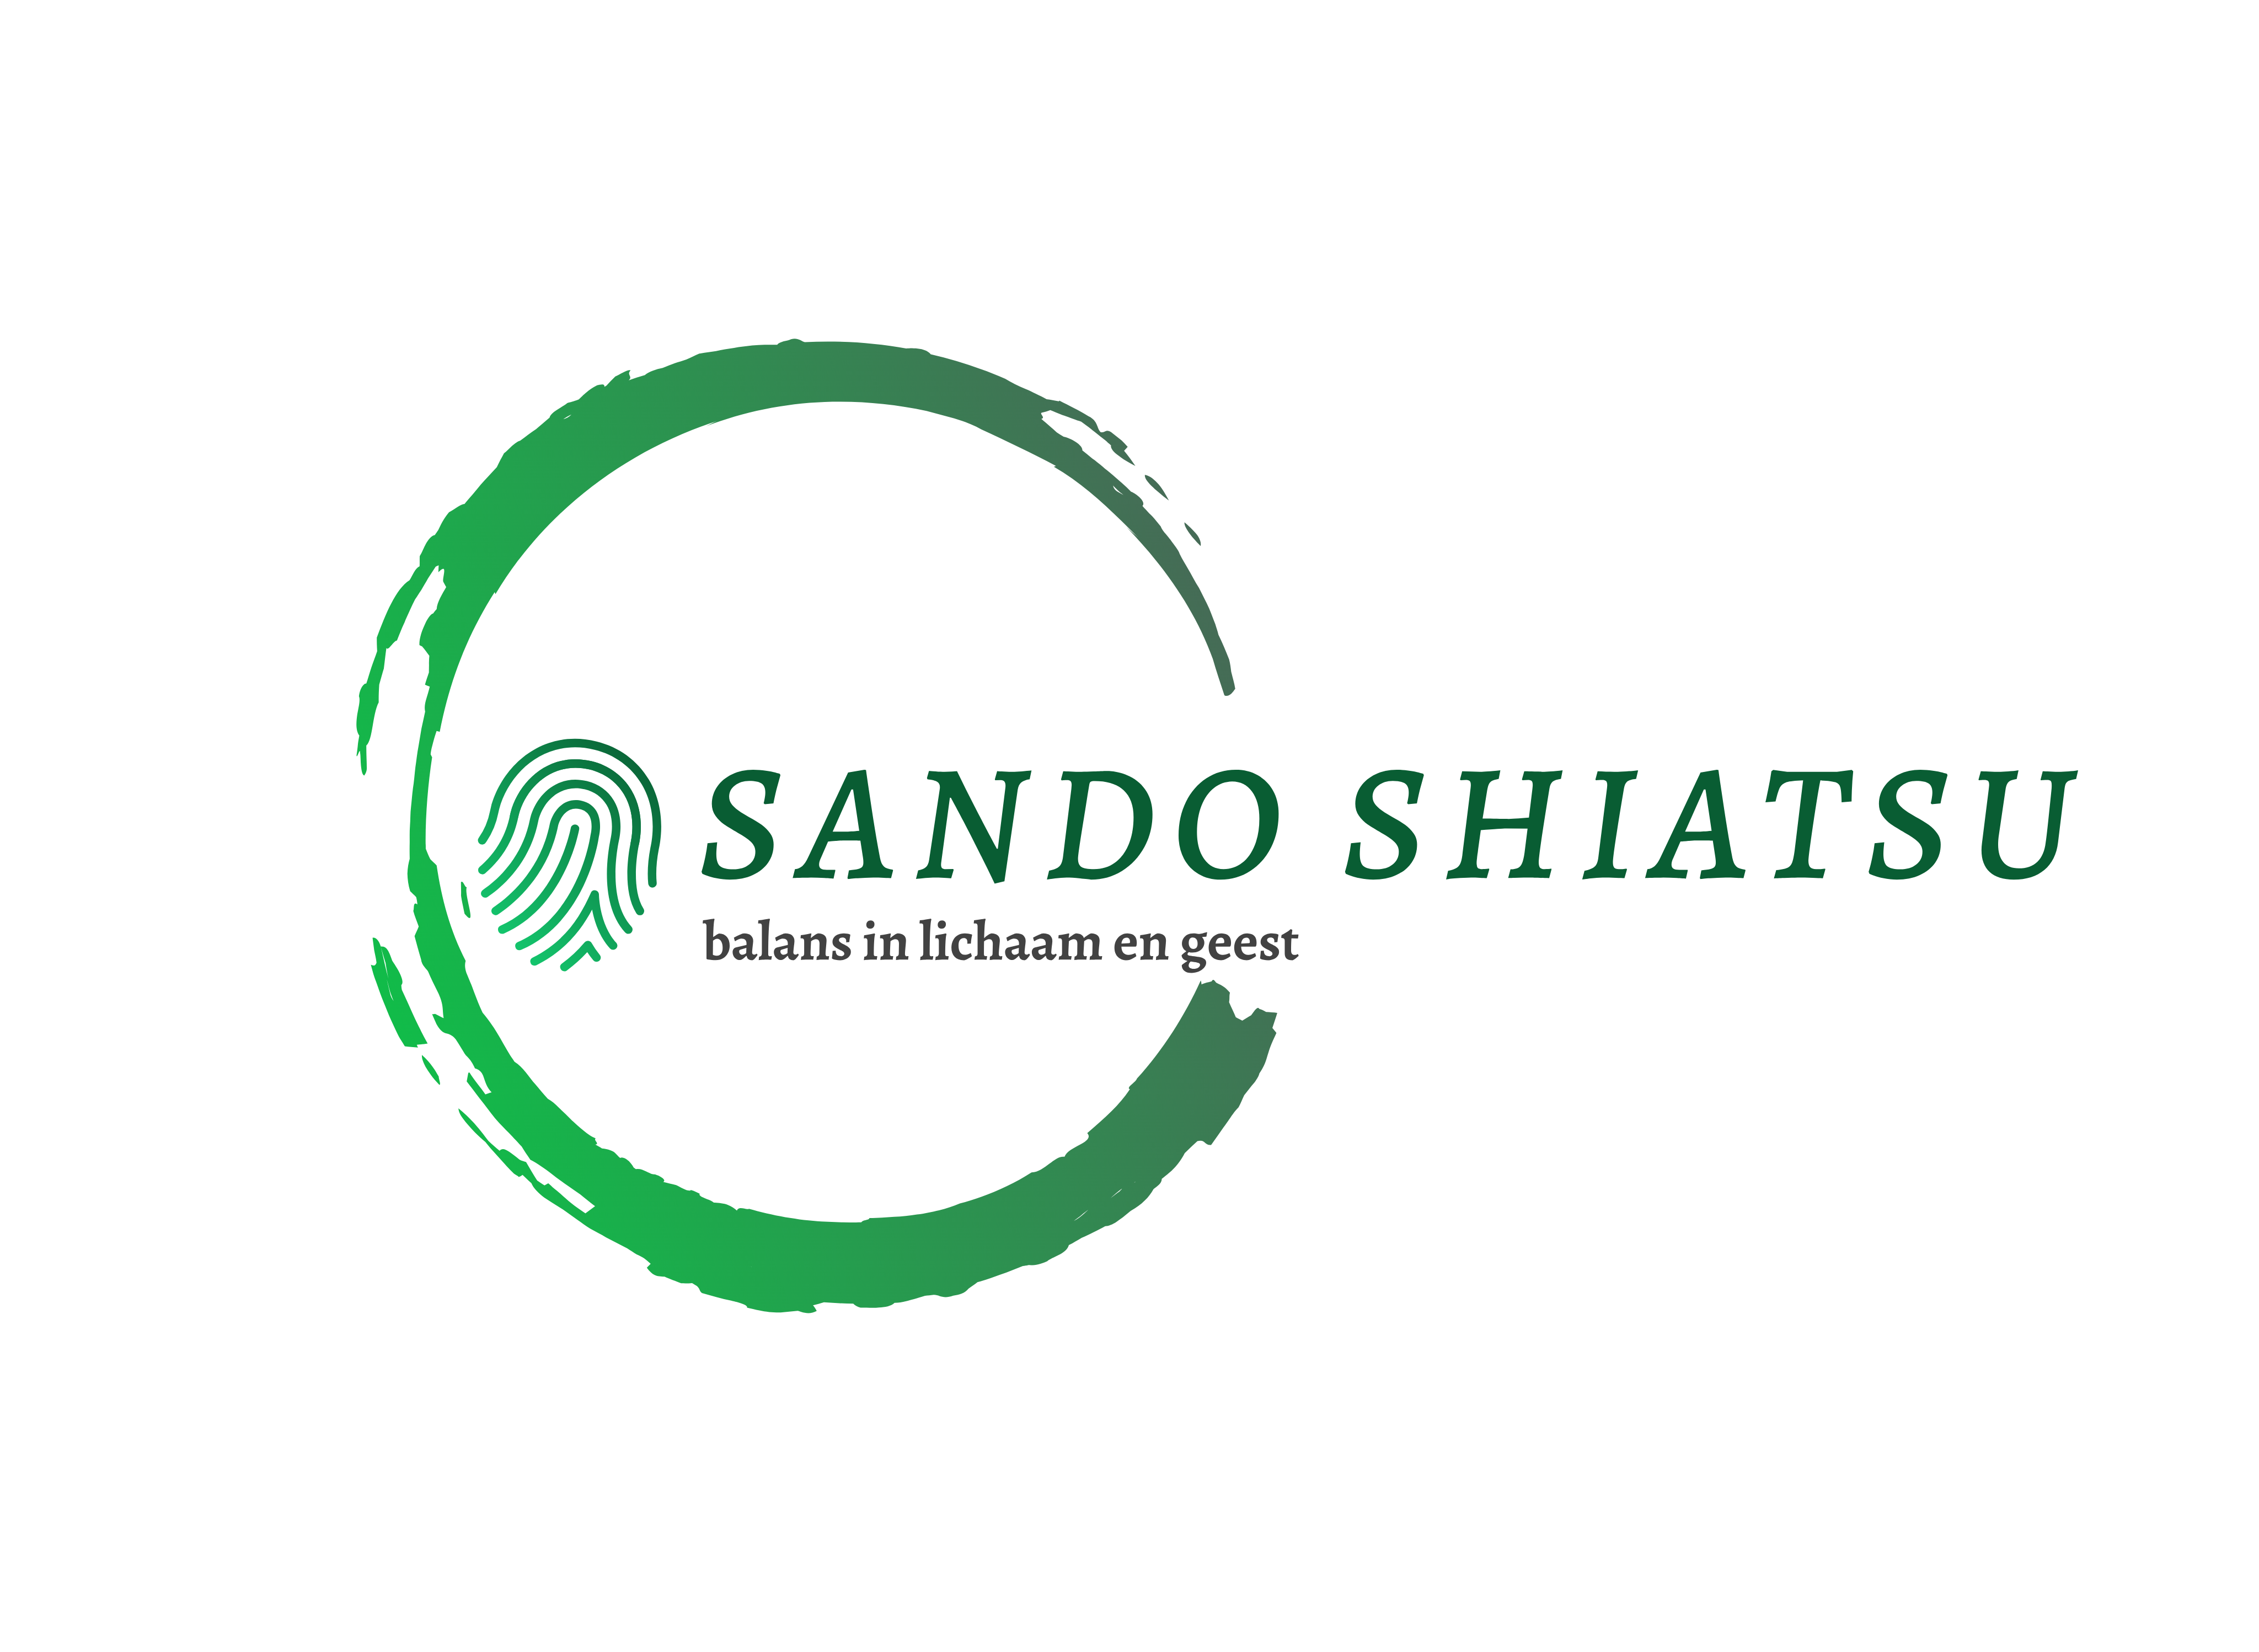 Sando Shiatsu